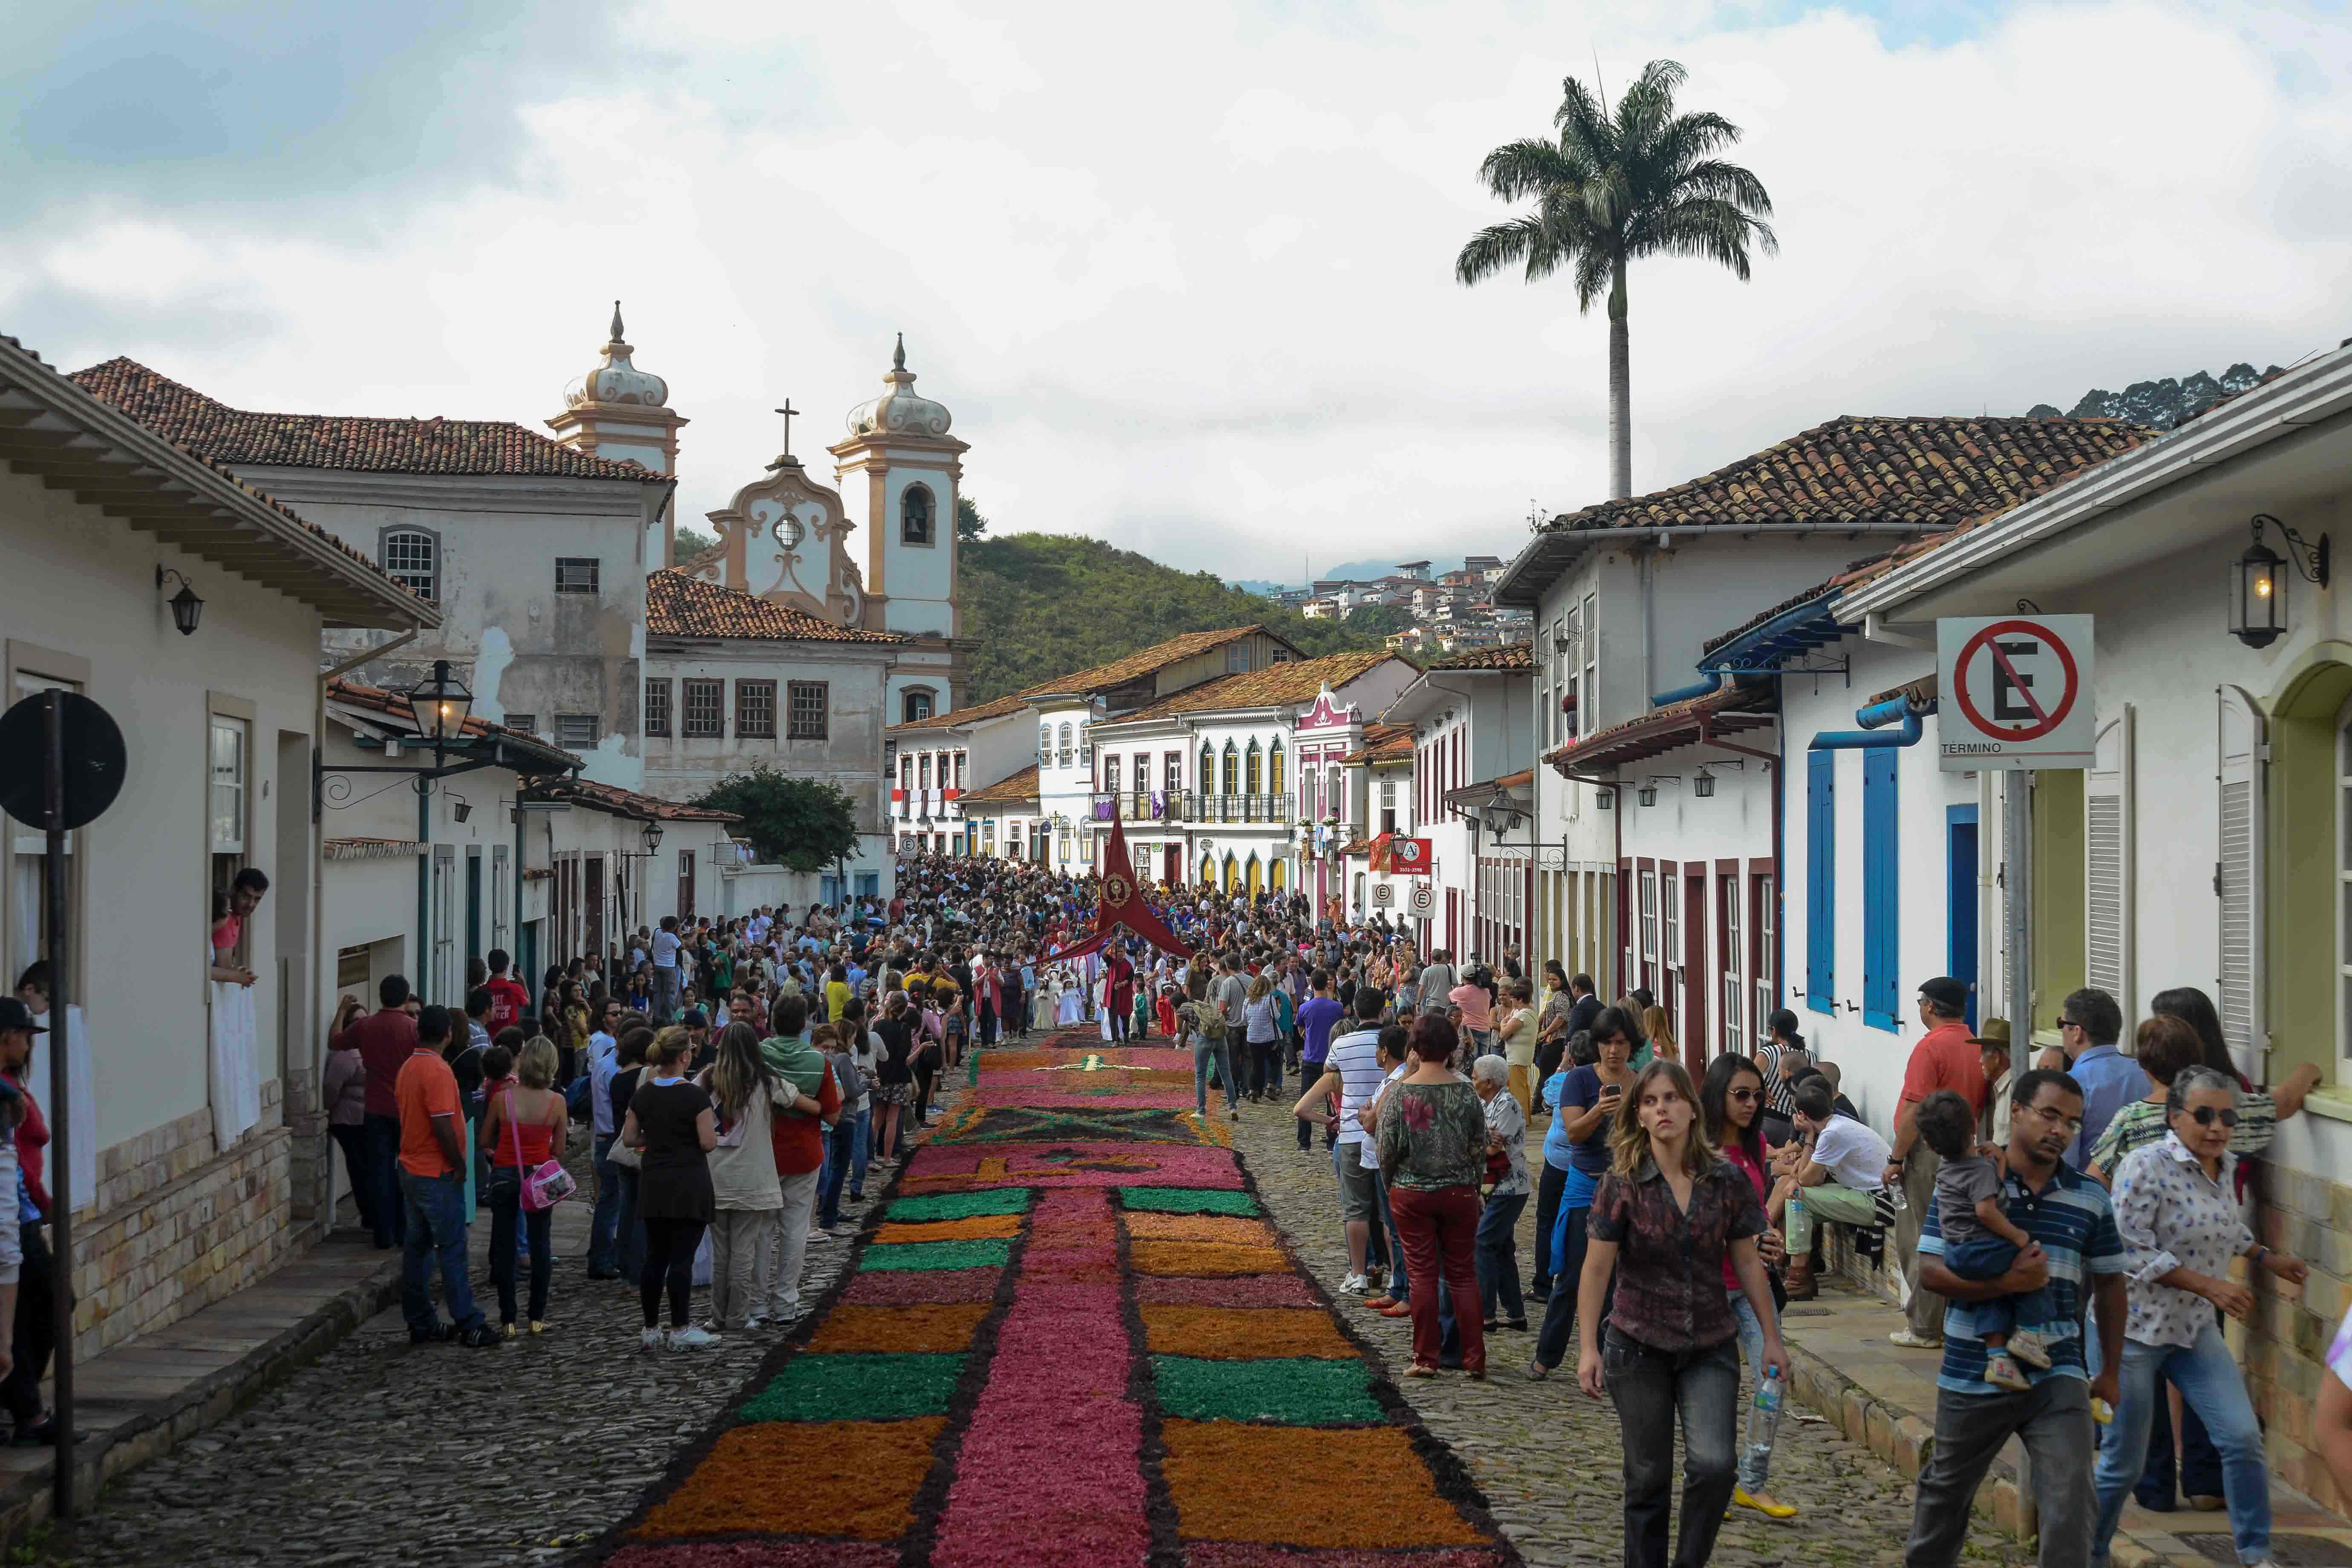 Rotas da fé impulsionam o turismo em Minas Gerais e oferecem opções diversas aos viajantes